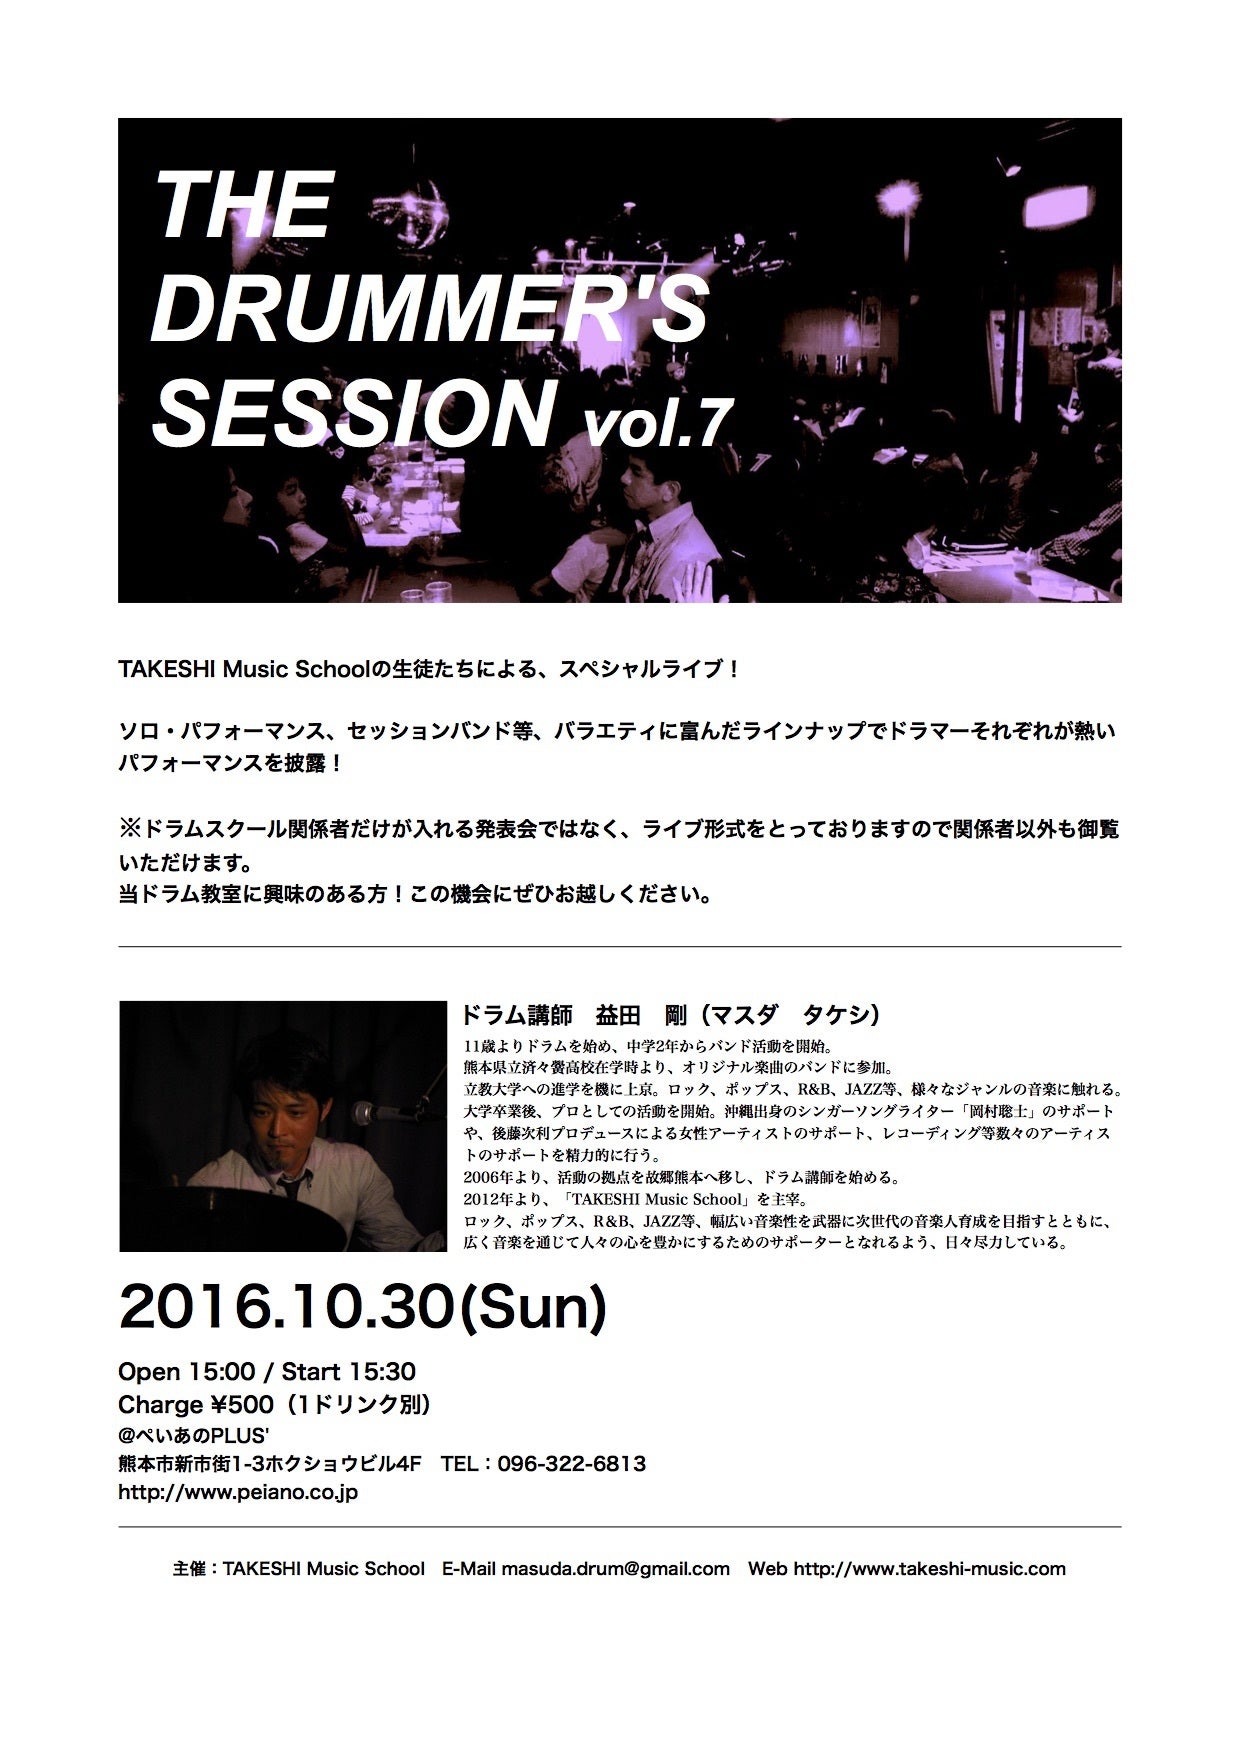 熊本のドラム教室「TAKESHI Music School」のブログ